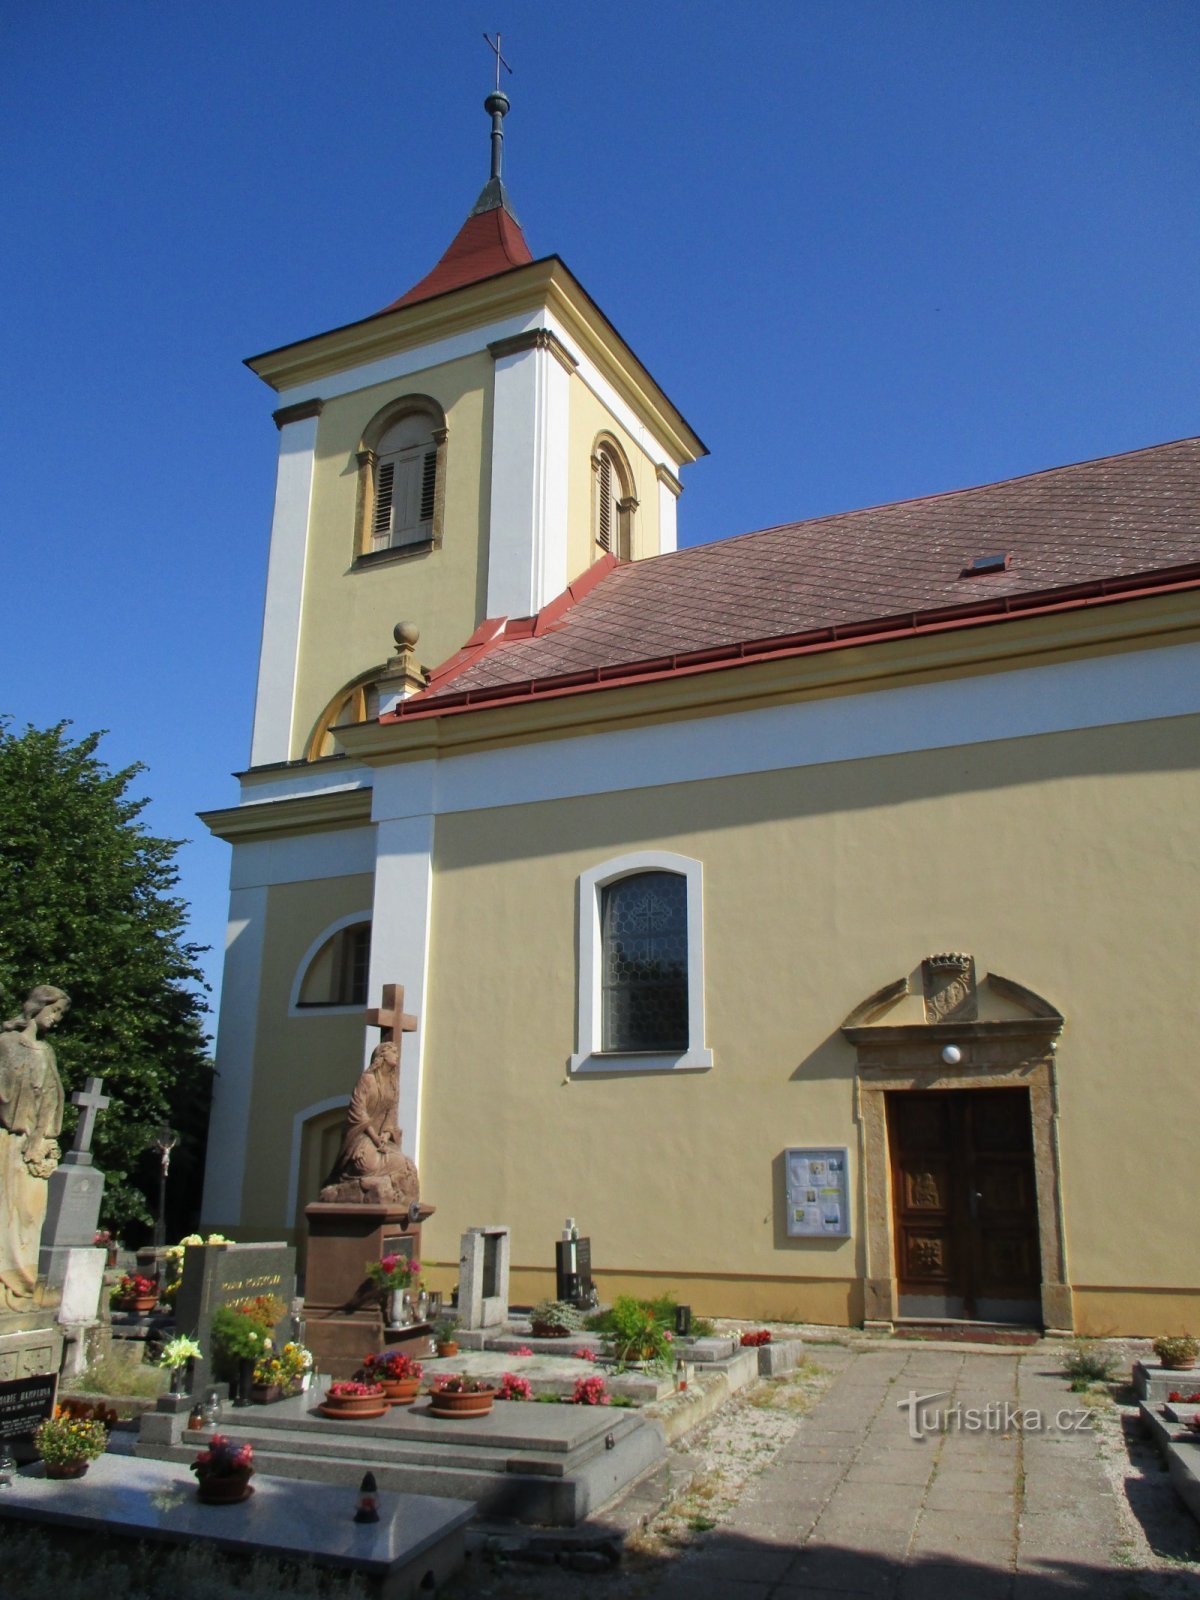 Cerkev sv. Justa (Žvole, 19.6.2019)